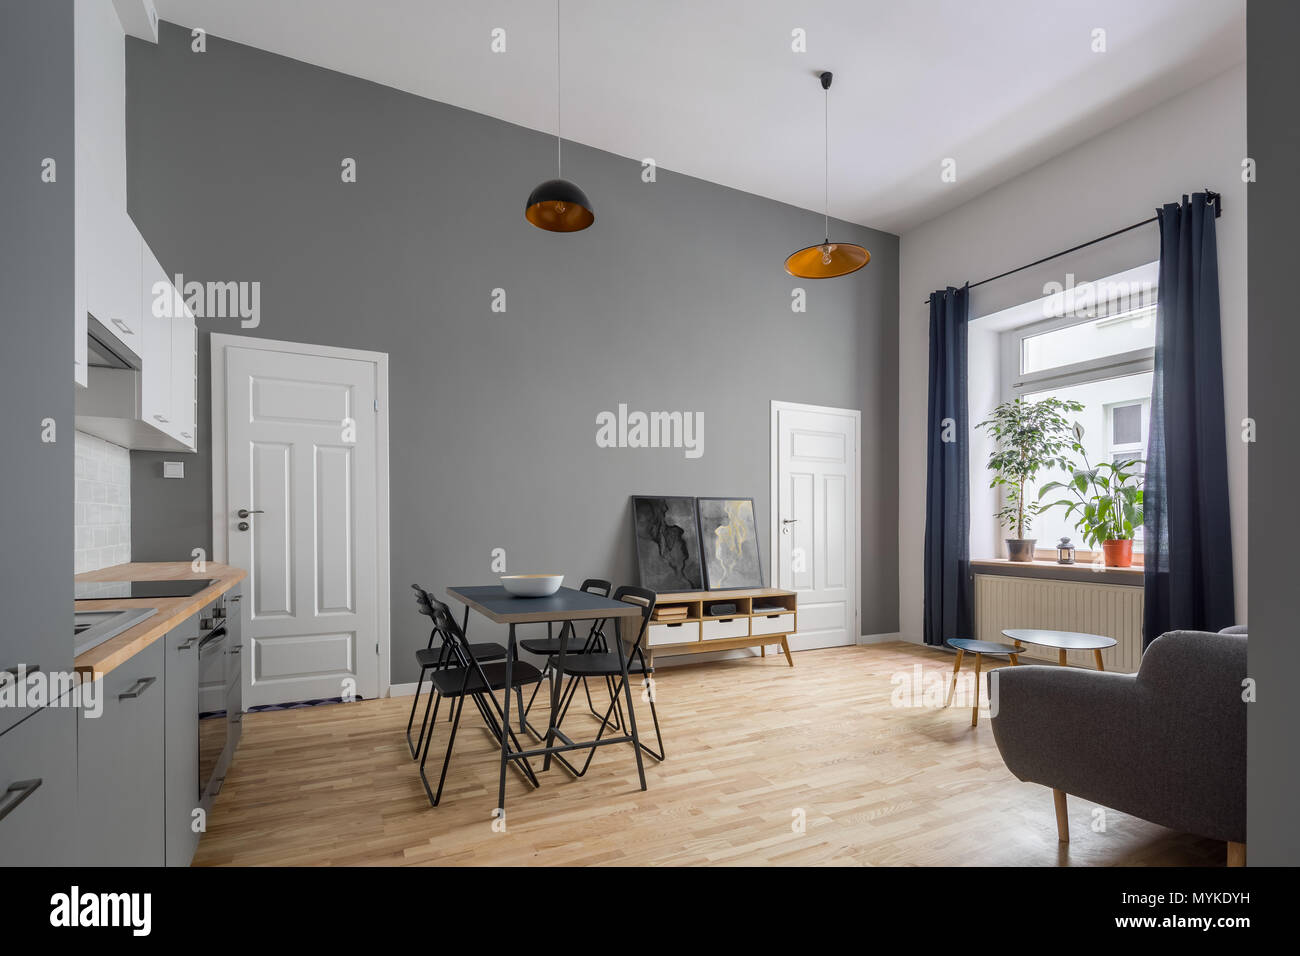 Moderne offene Wohnung in Grau mit Küchenzeile und einfache Tabelle Stockfoto